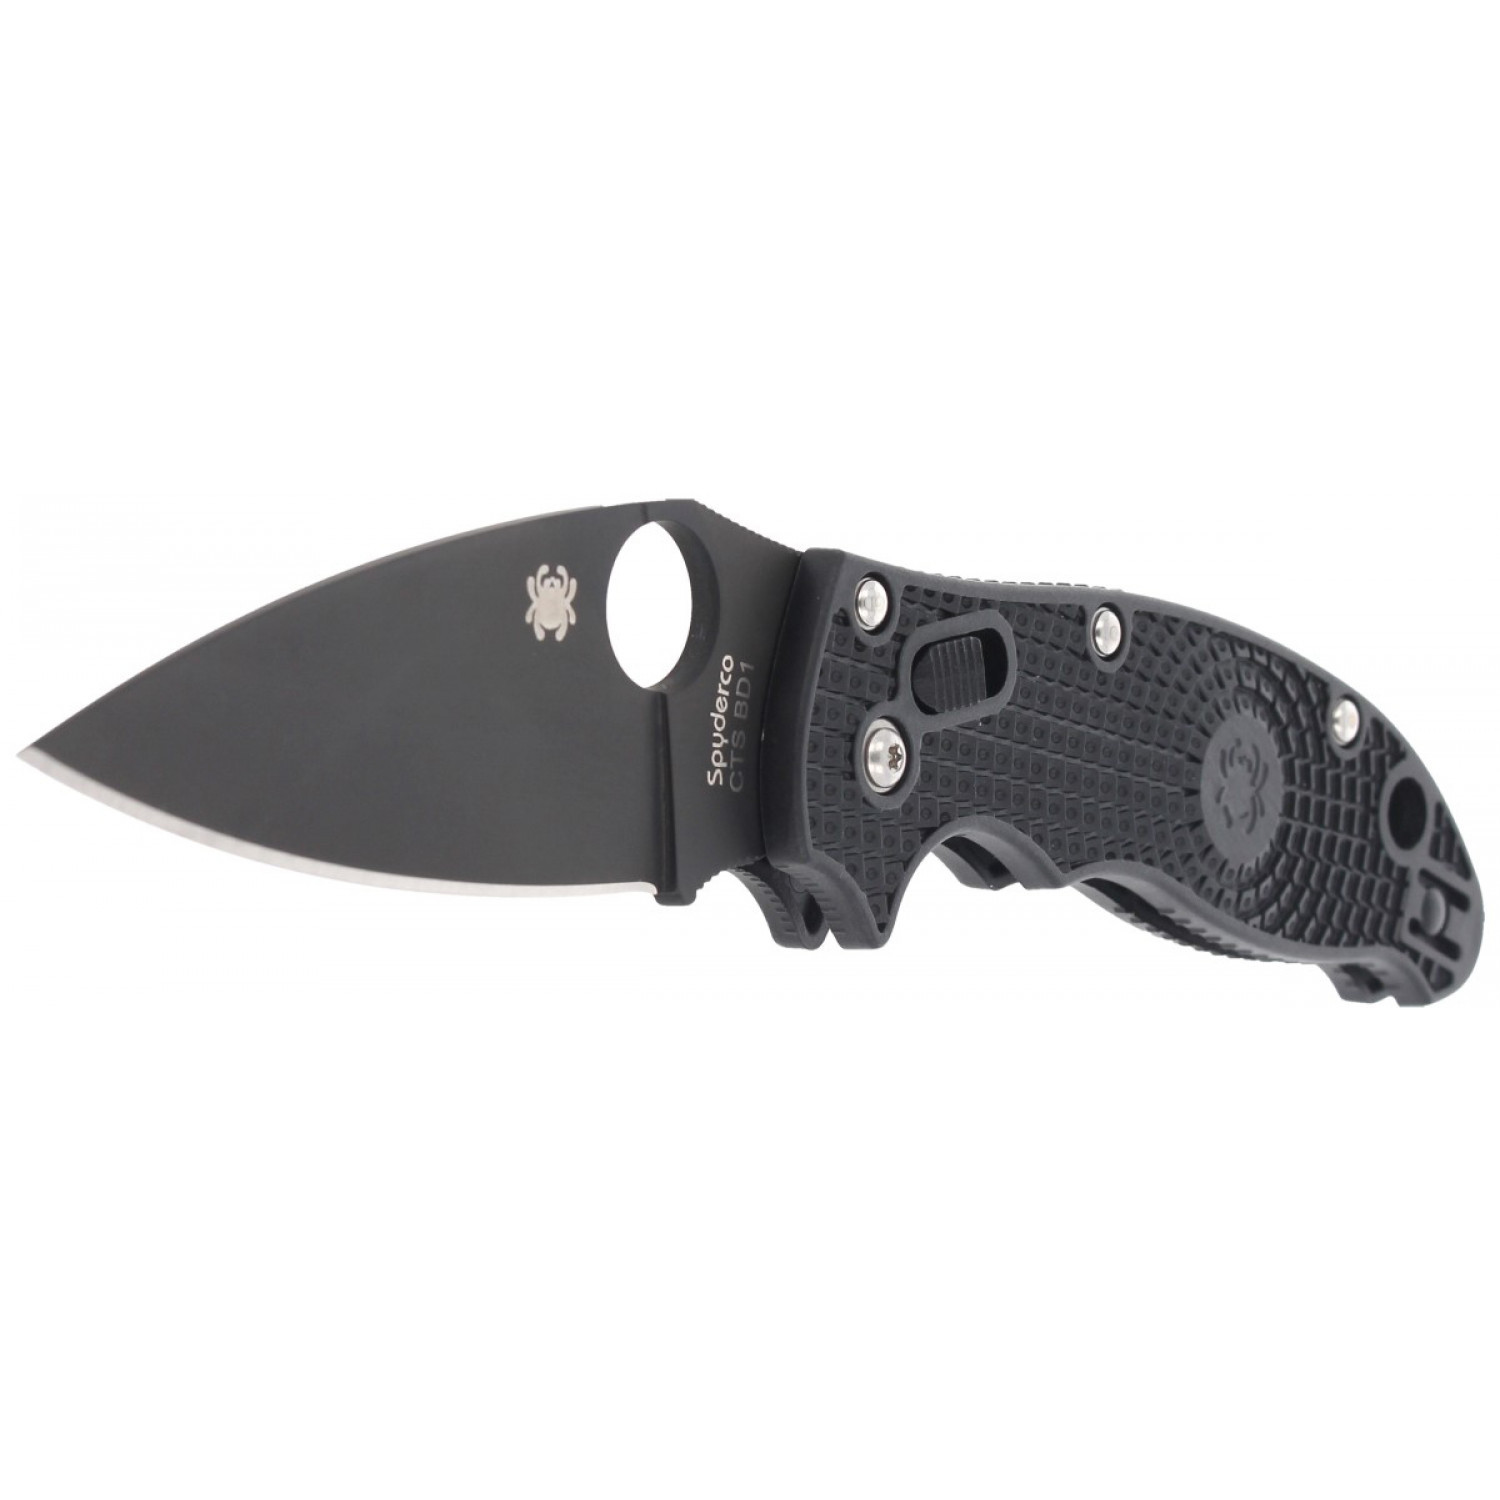 Нож складной Manix 2 Spyderco C101PBBK2, сталь Carpenter CTS™ - BD1 Alloy Black DLC Coated Plain, рукоять пластик FRCP, чёрный - фото 10